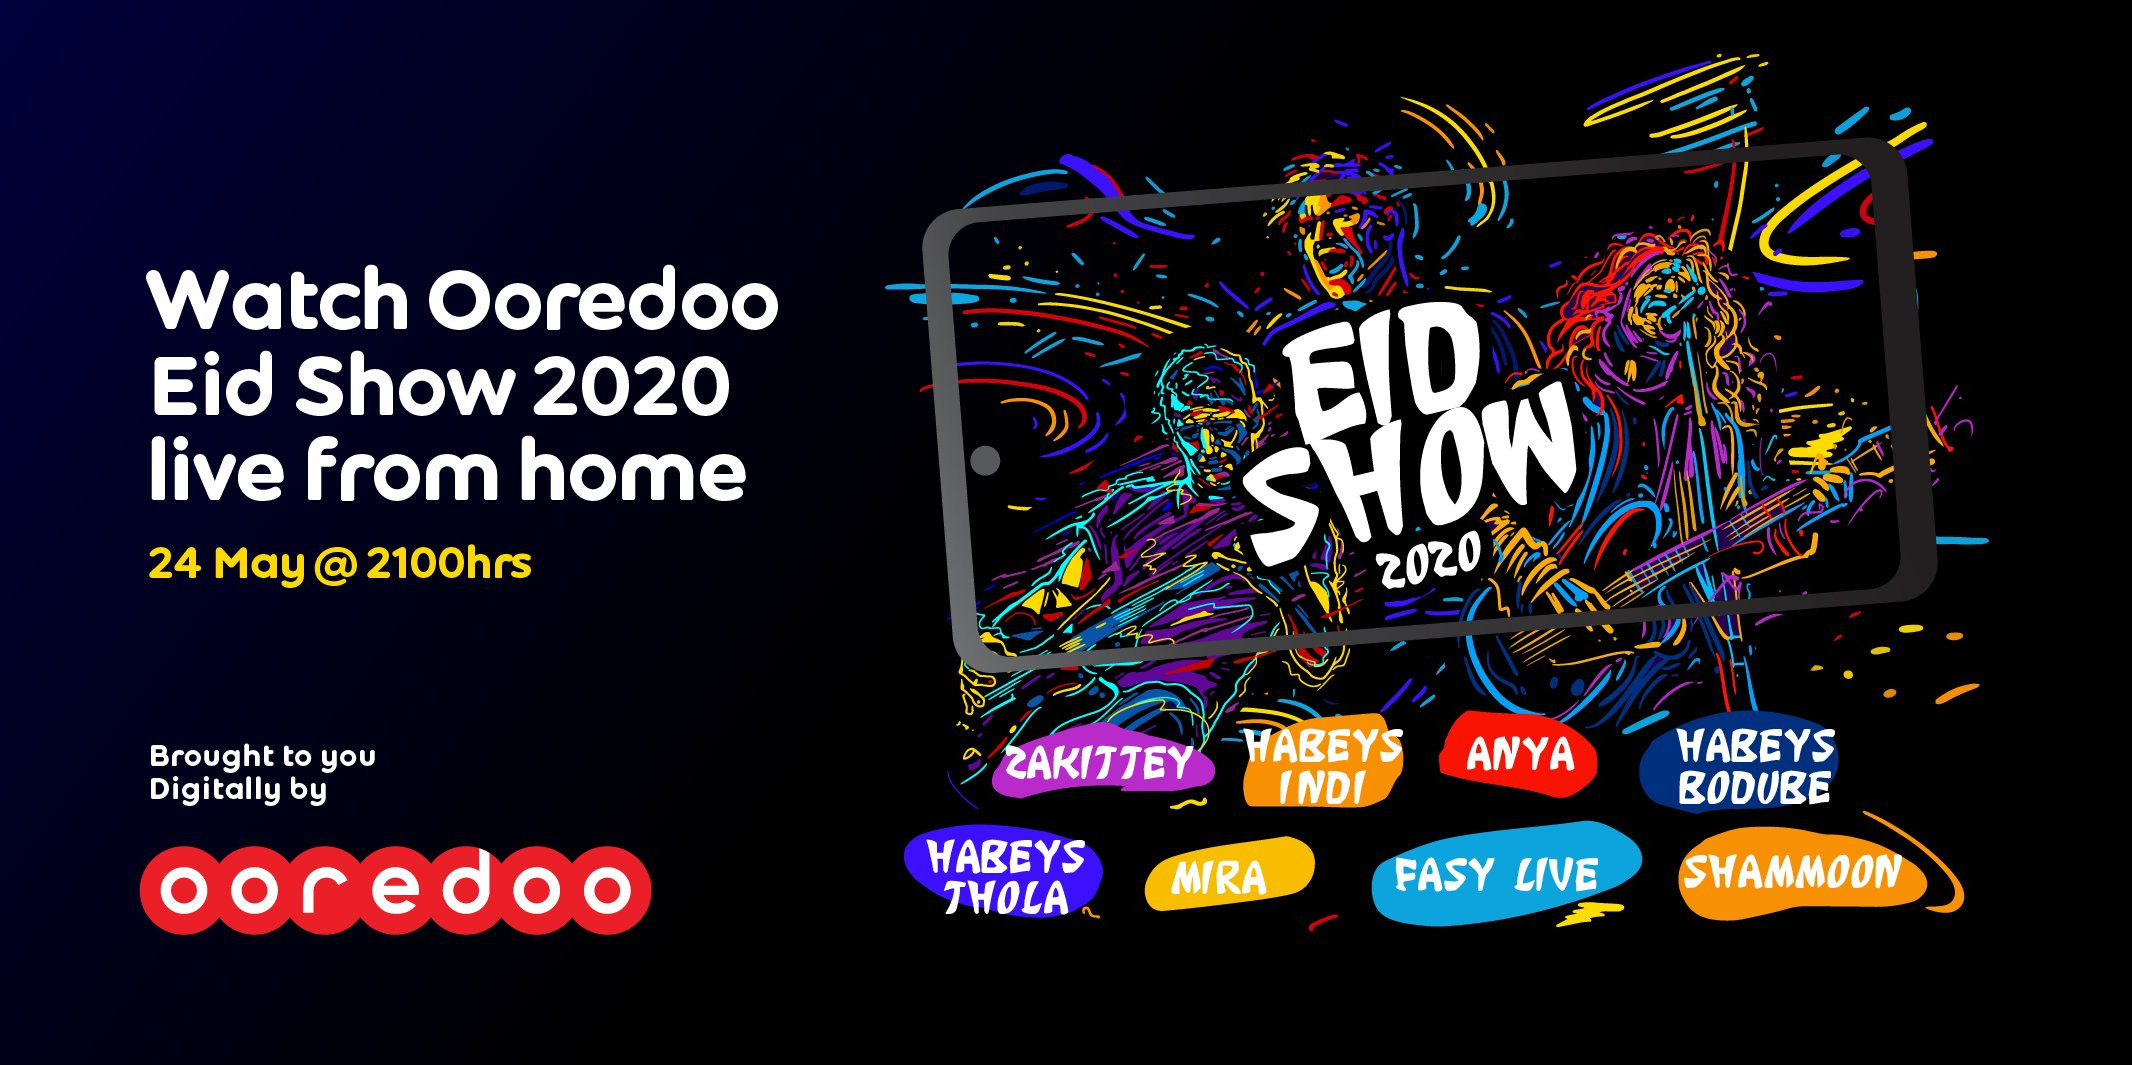 Introducing Ooredoo Eid Show 2020